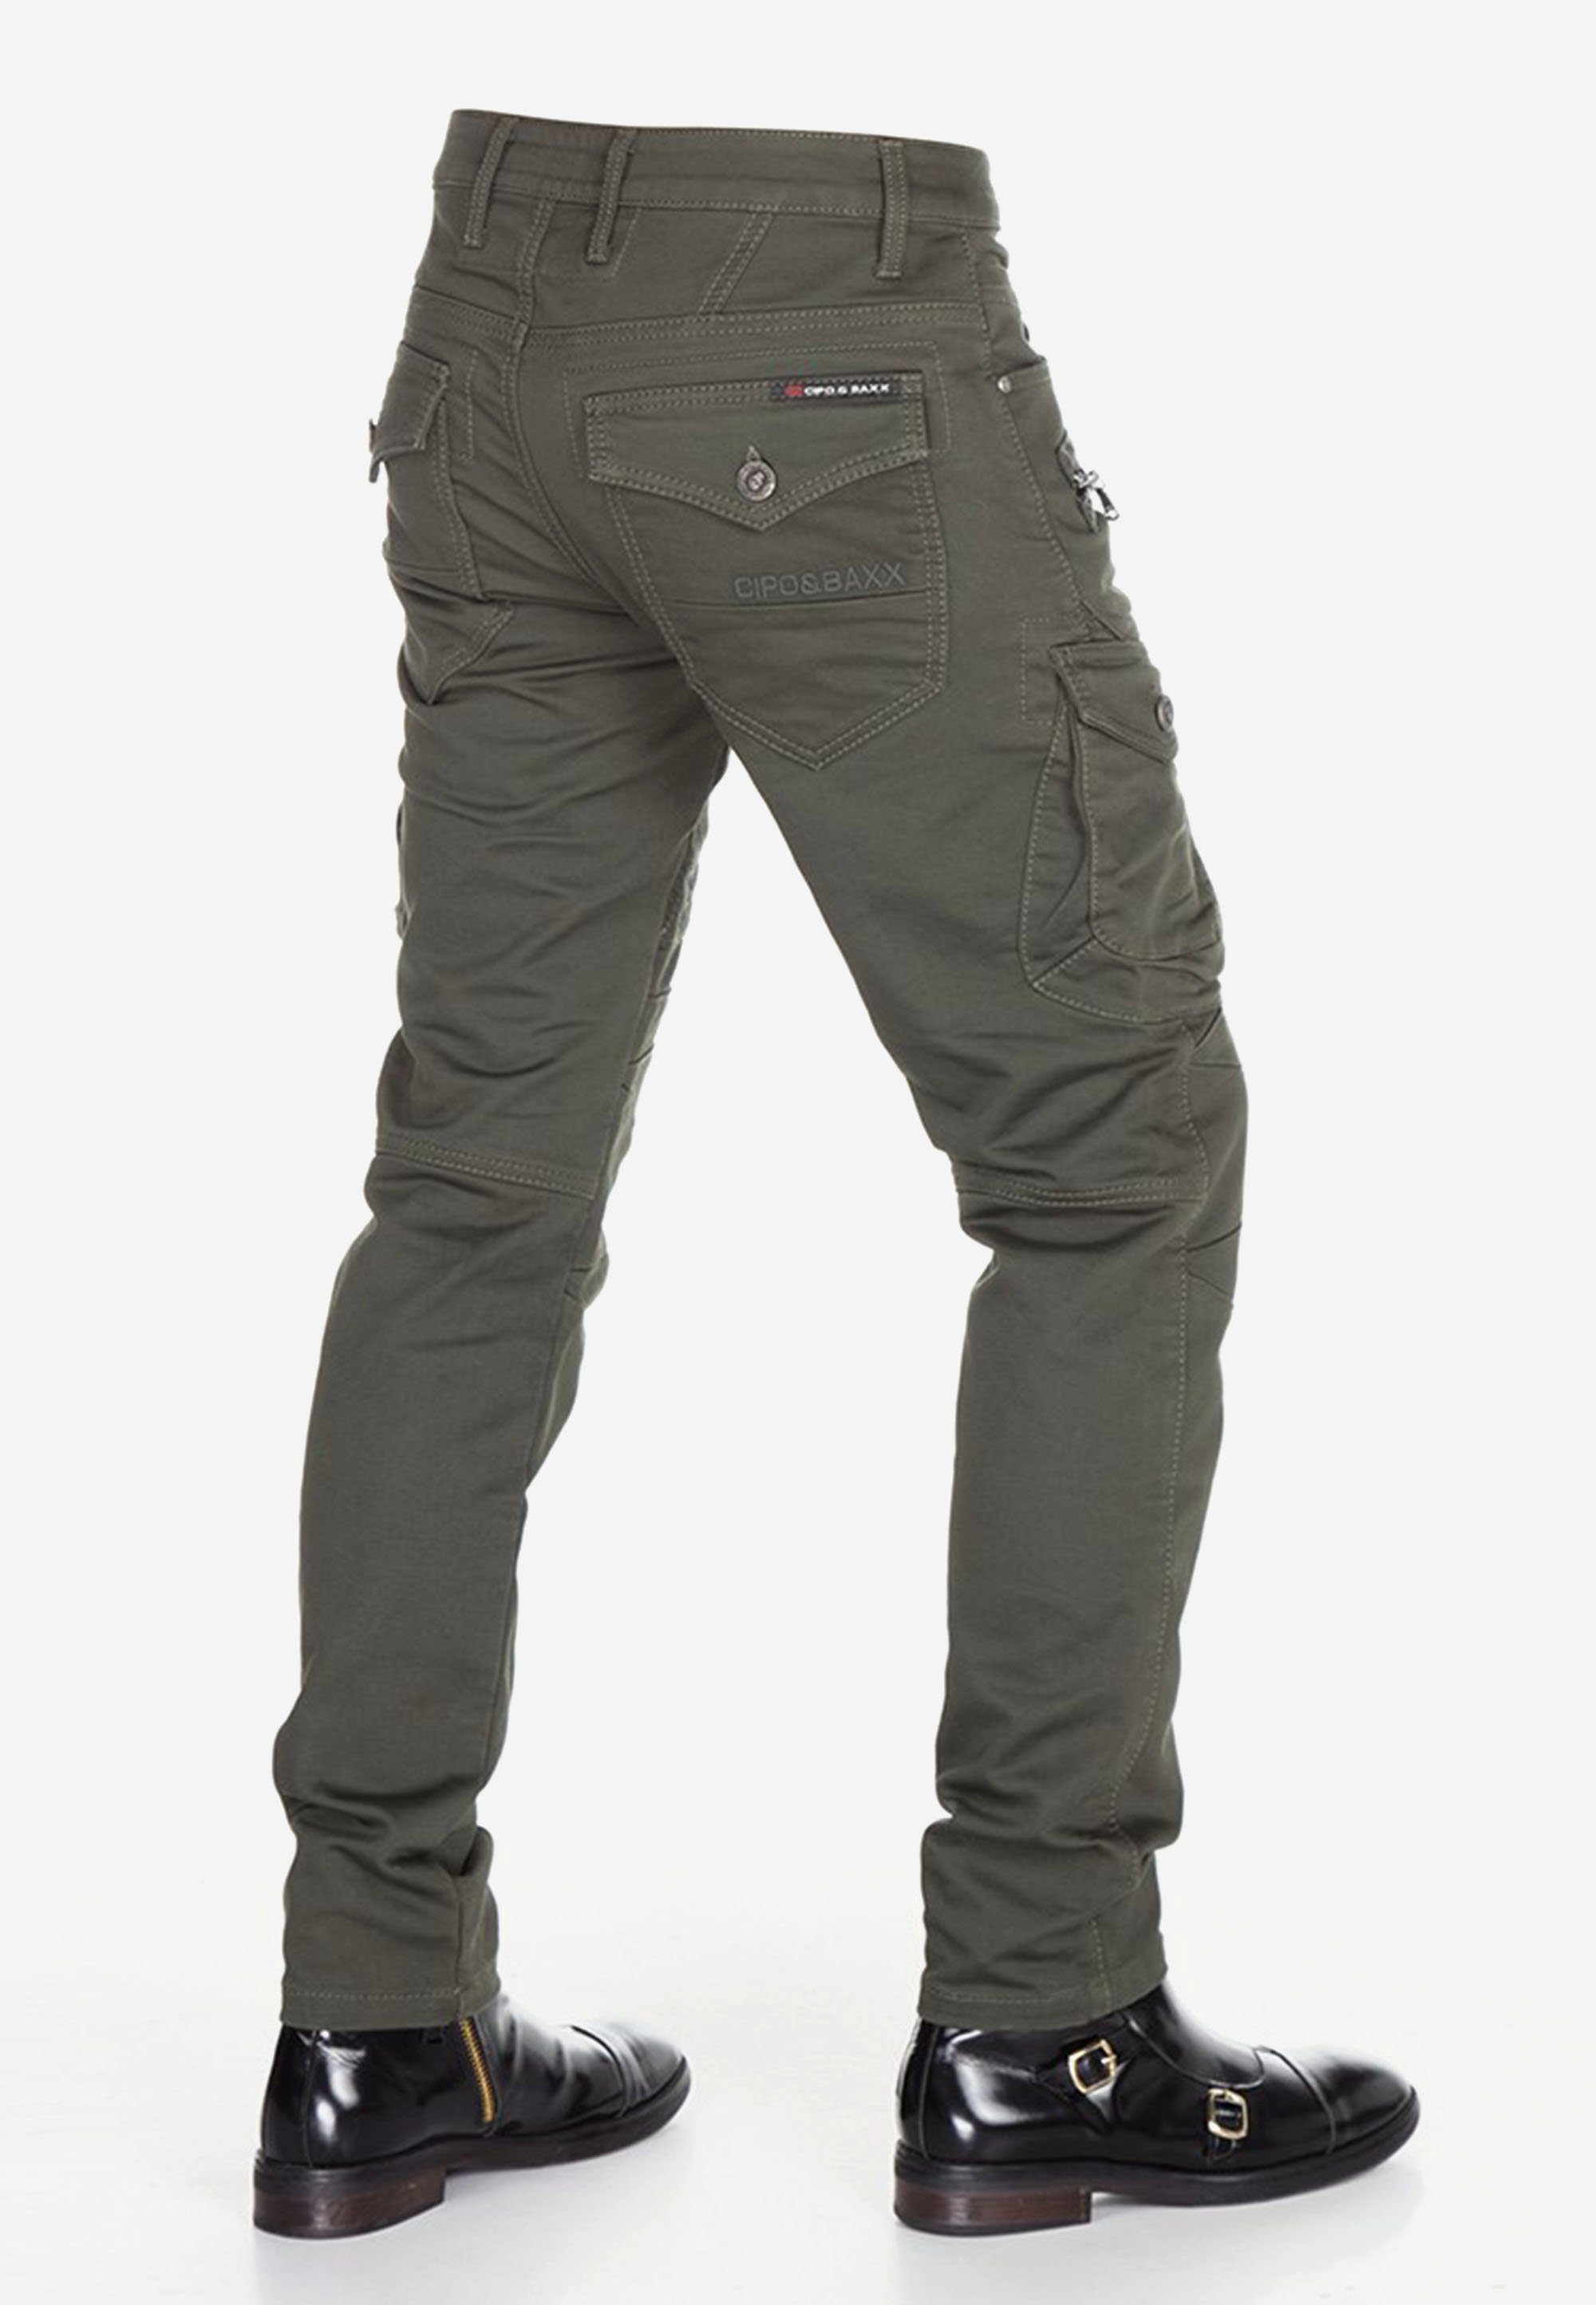 Cipo & Baxx Bequeme Jeans im angesagten khaki Biker-Stil